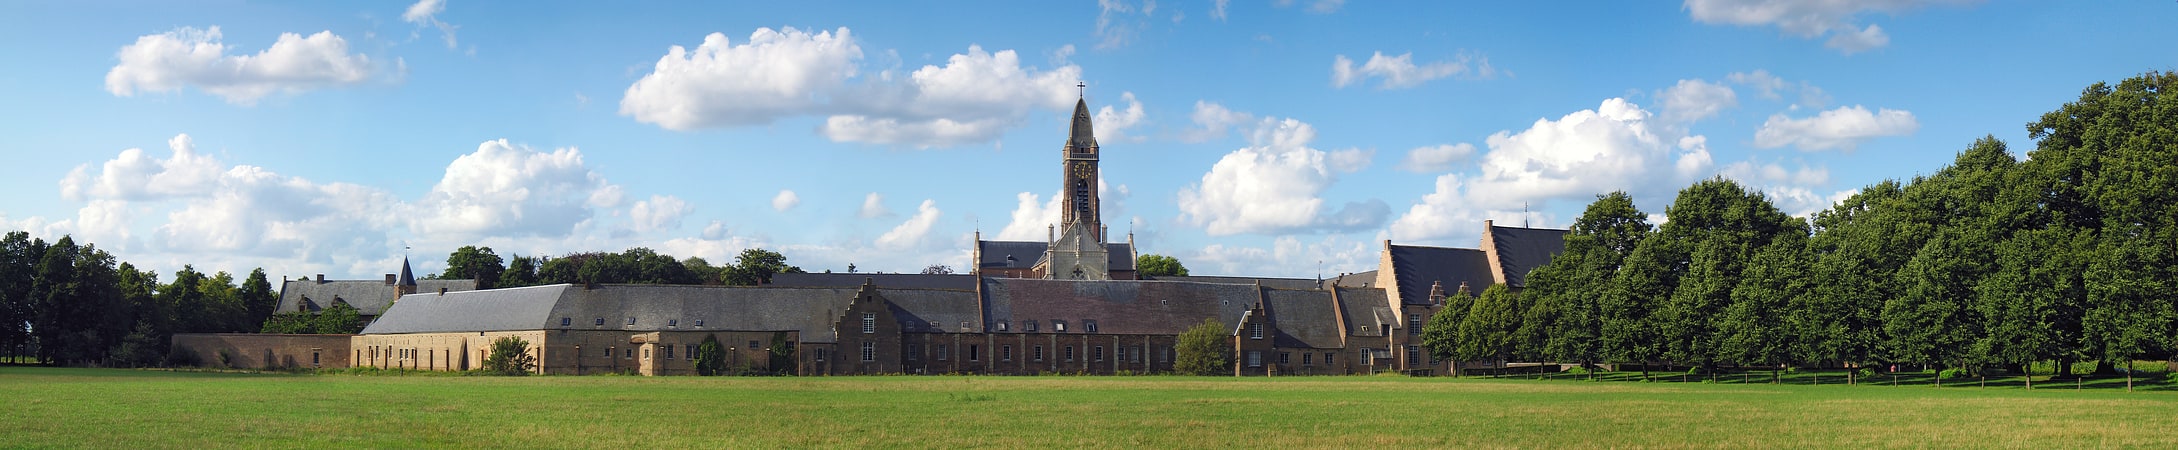 Monastery in Westerlo, Belgium